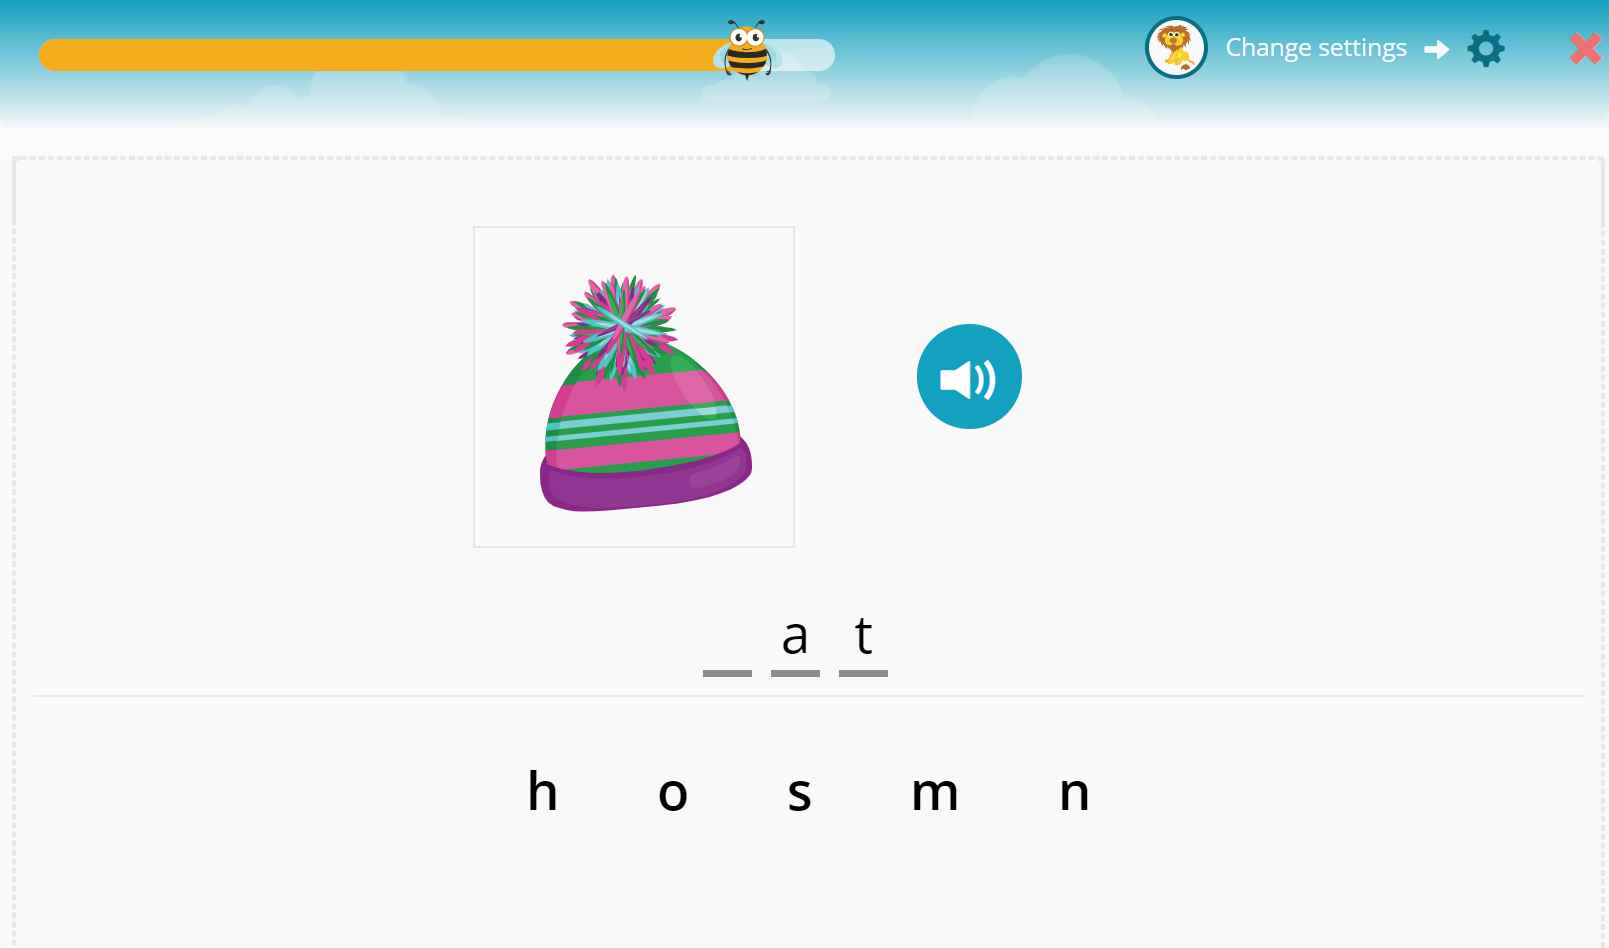 Na obrázku je čepice a tři písmena k doplnění anglického slova "hat" písmena a a t jsou již doplněna. Dítě si má vybrat ze série písmen písmeno H